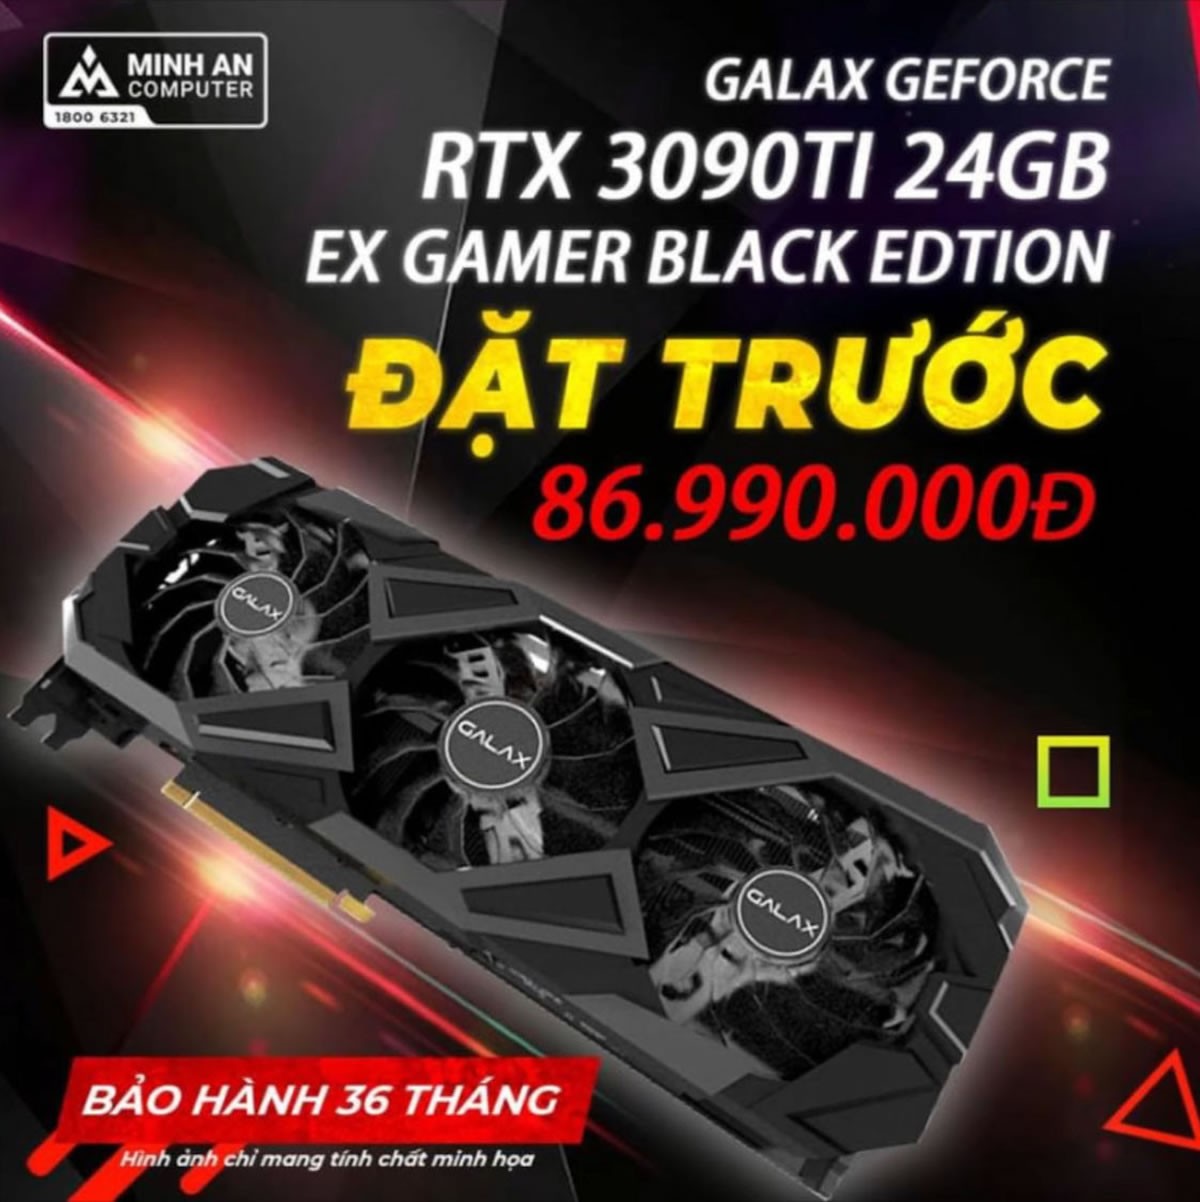 Une nouvelle GeForce RTX 3090 TI Custom listée en magasin à 3840 dollars